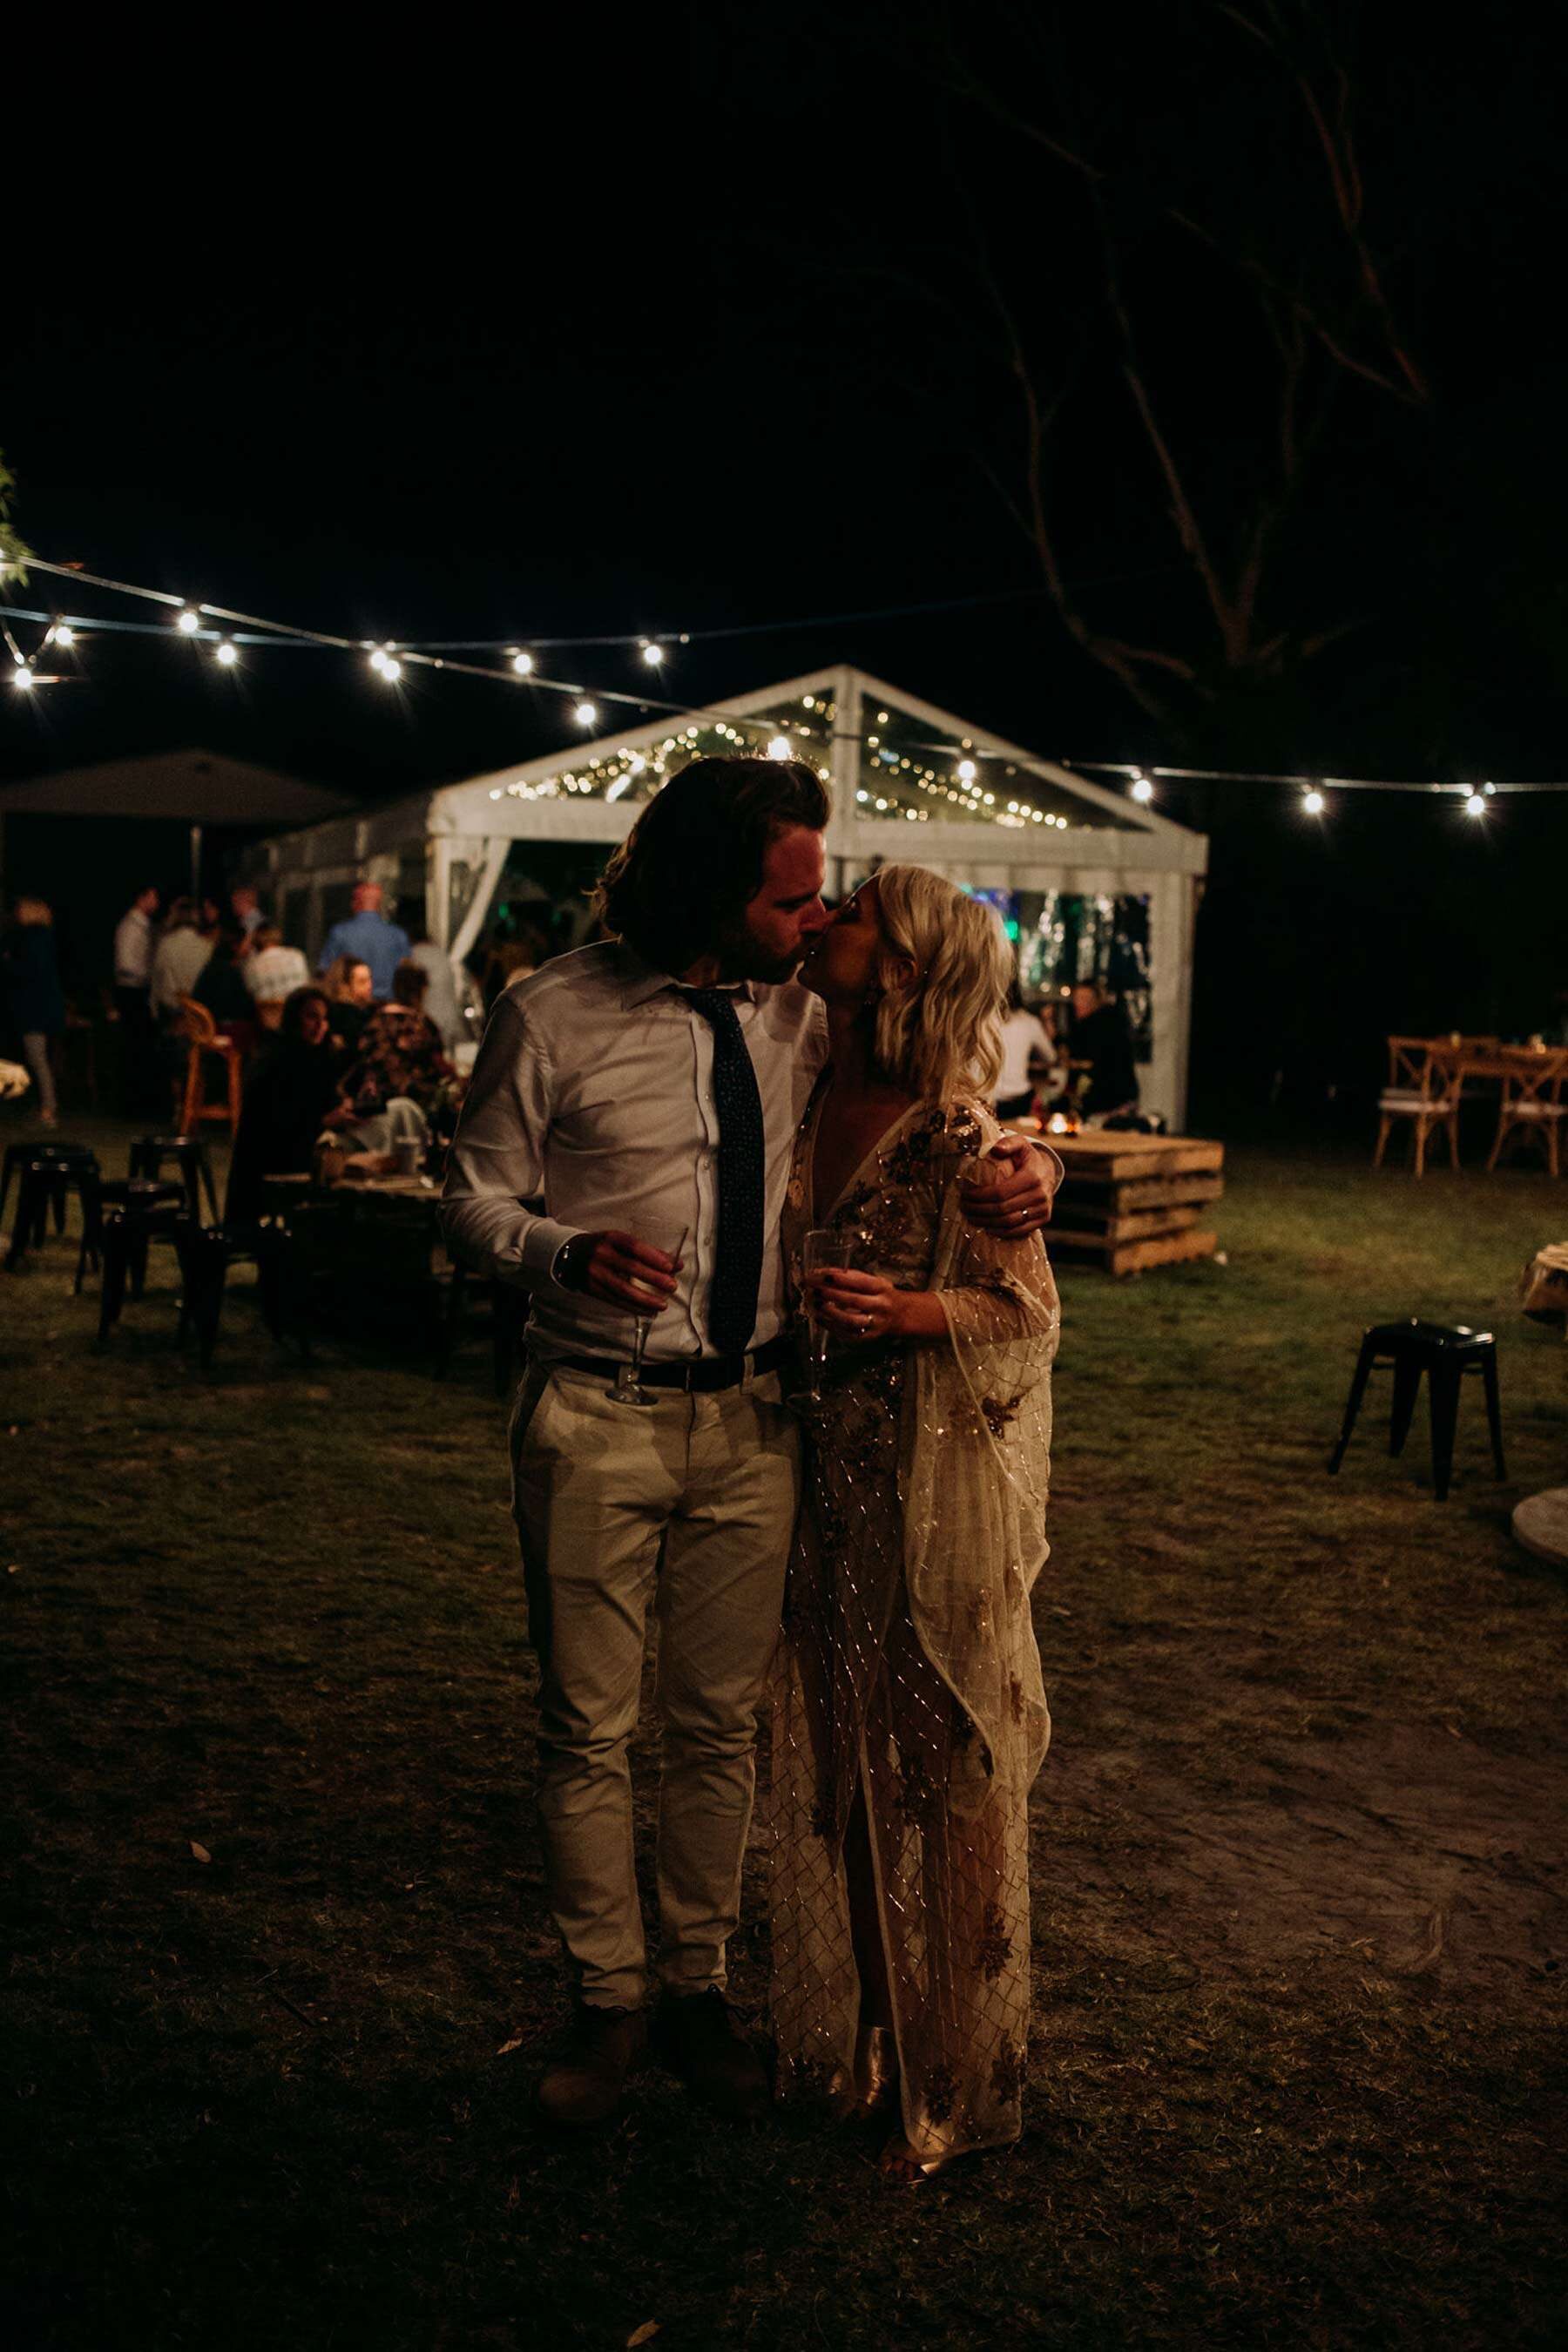 DIY backyard wedding in Geelong with loads of food trucks